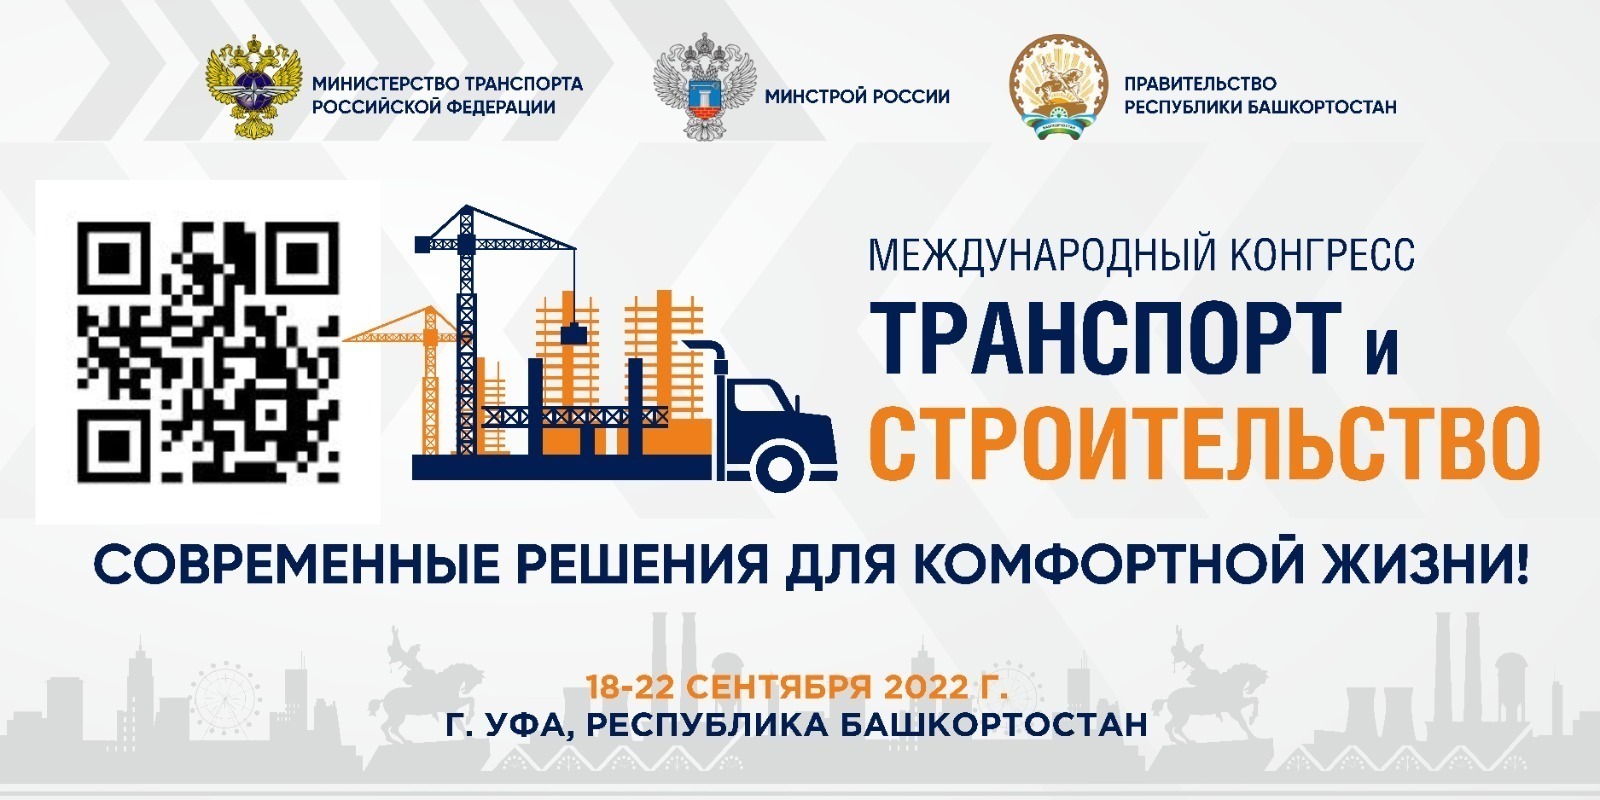 С 18 по 20 сентября в Башкирии пройдет Всероссийский конкурс профессионального мастерства «Лучший водитель грузовика».